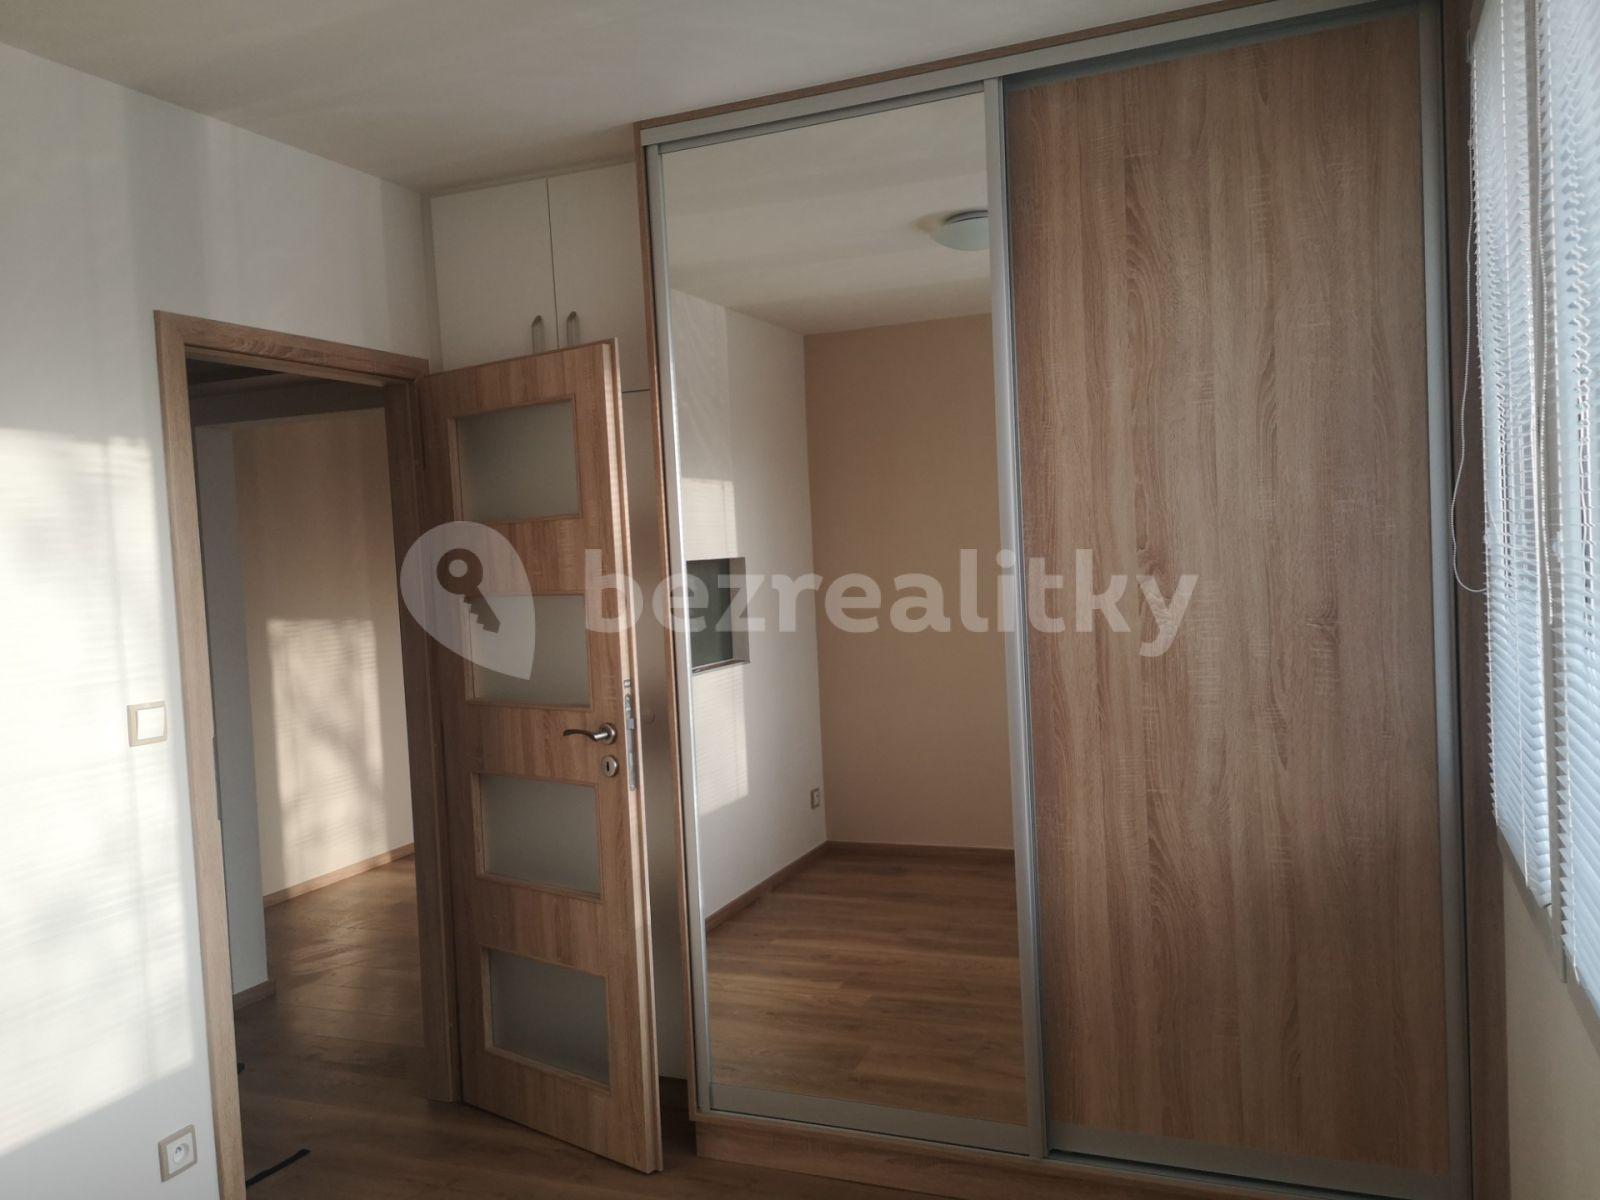 1 bedroom with open-plan kitchen flat to rent, 37 m², sídliště Vajgar, Jindřichův Hradec, Jihočeský Region